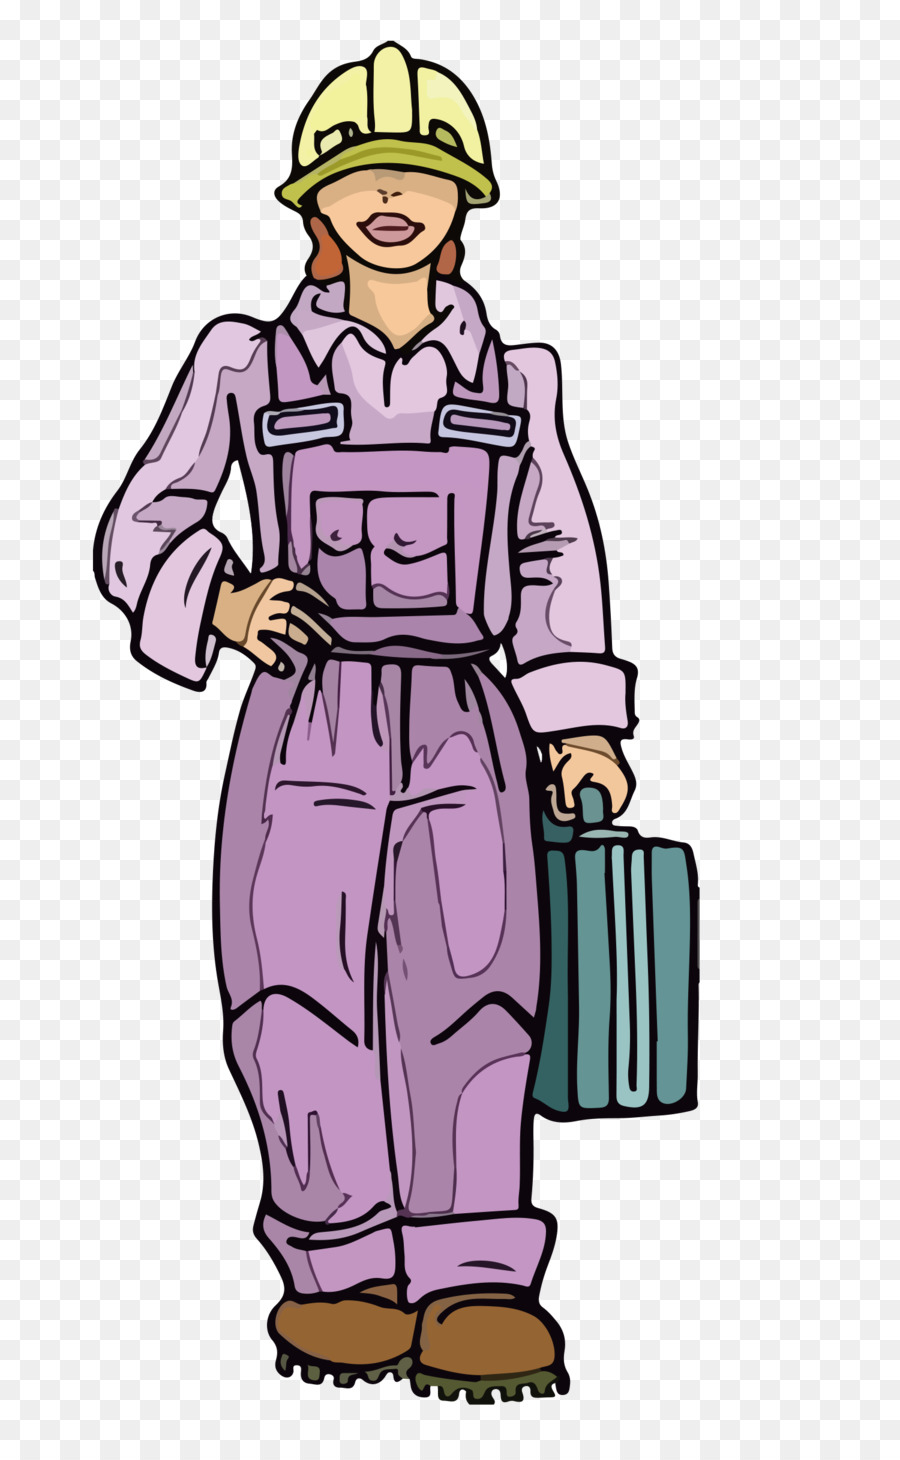 Cartoon-Arbeiter-clipart - Cartoon tragen die toolbox der weiblichen Arbeiter Vektor